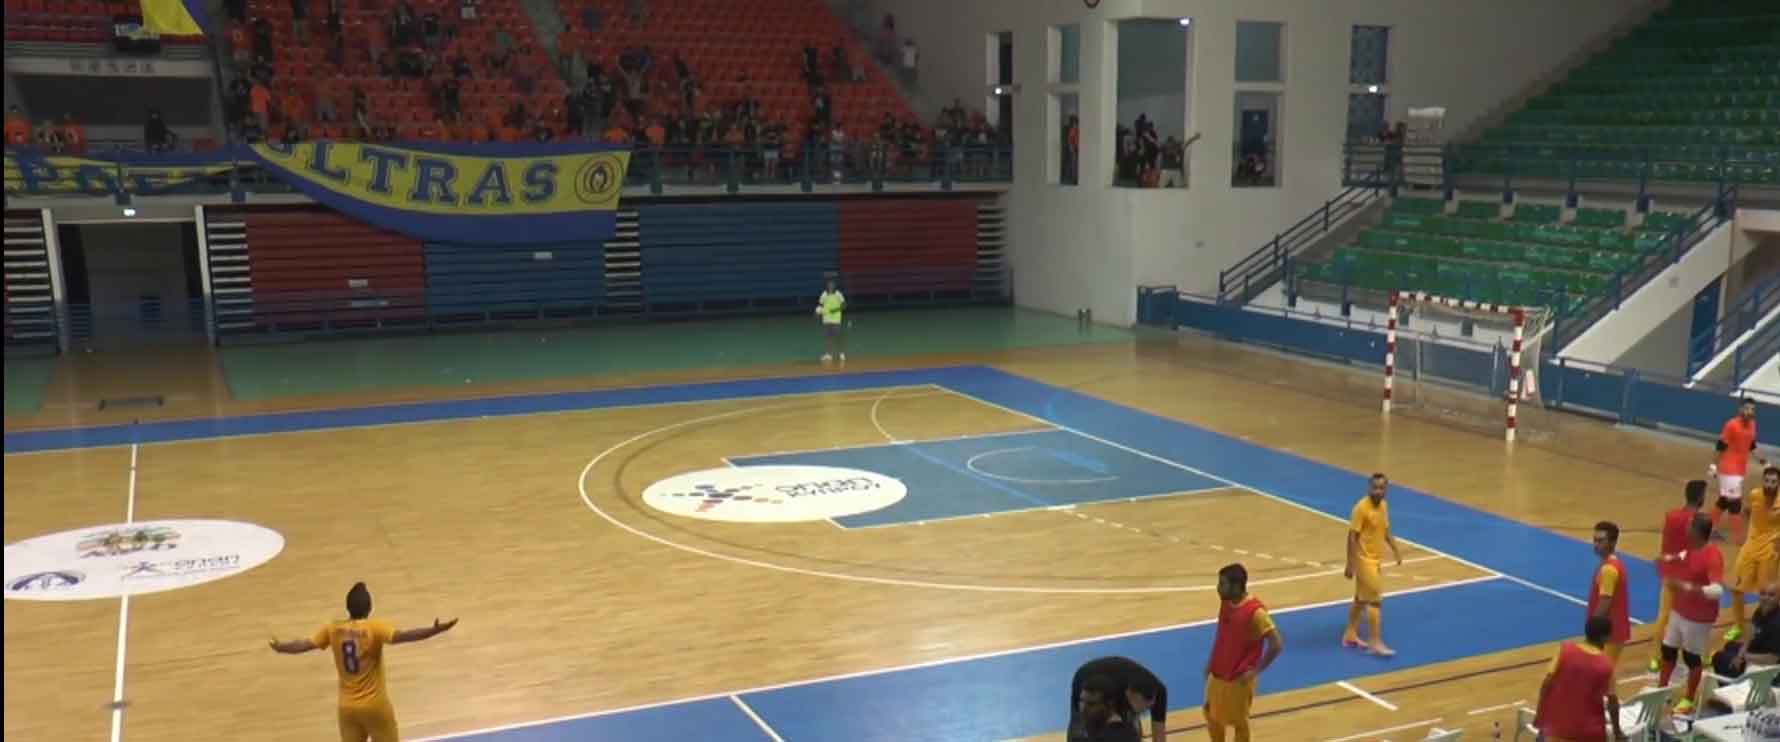 Μάχη να κρατηθεί στη ζωή από 16χρονο οπαδό του ΑΠΟΕΛ – Κτυπήθηκε στο κεφάλι στα επεισόδια στον αγώνα Futsal με την Ανόρθωση